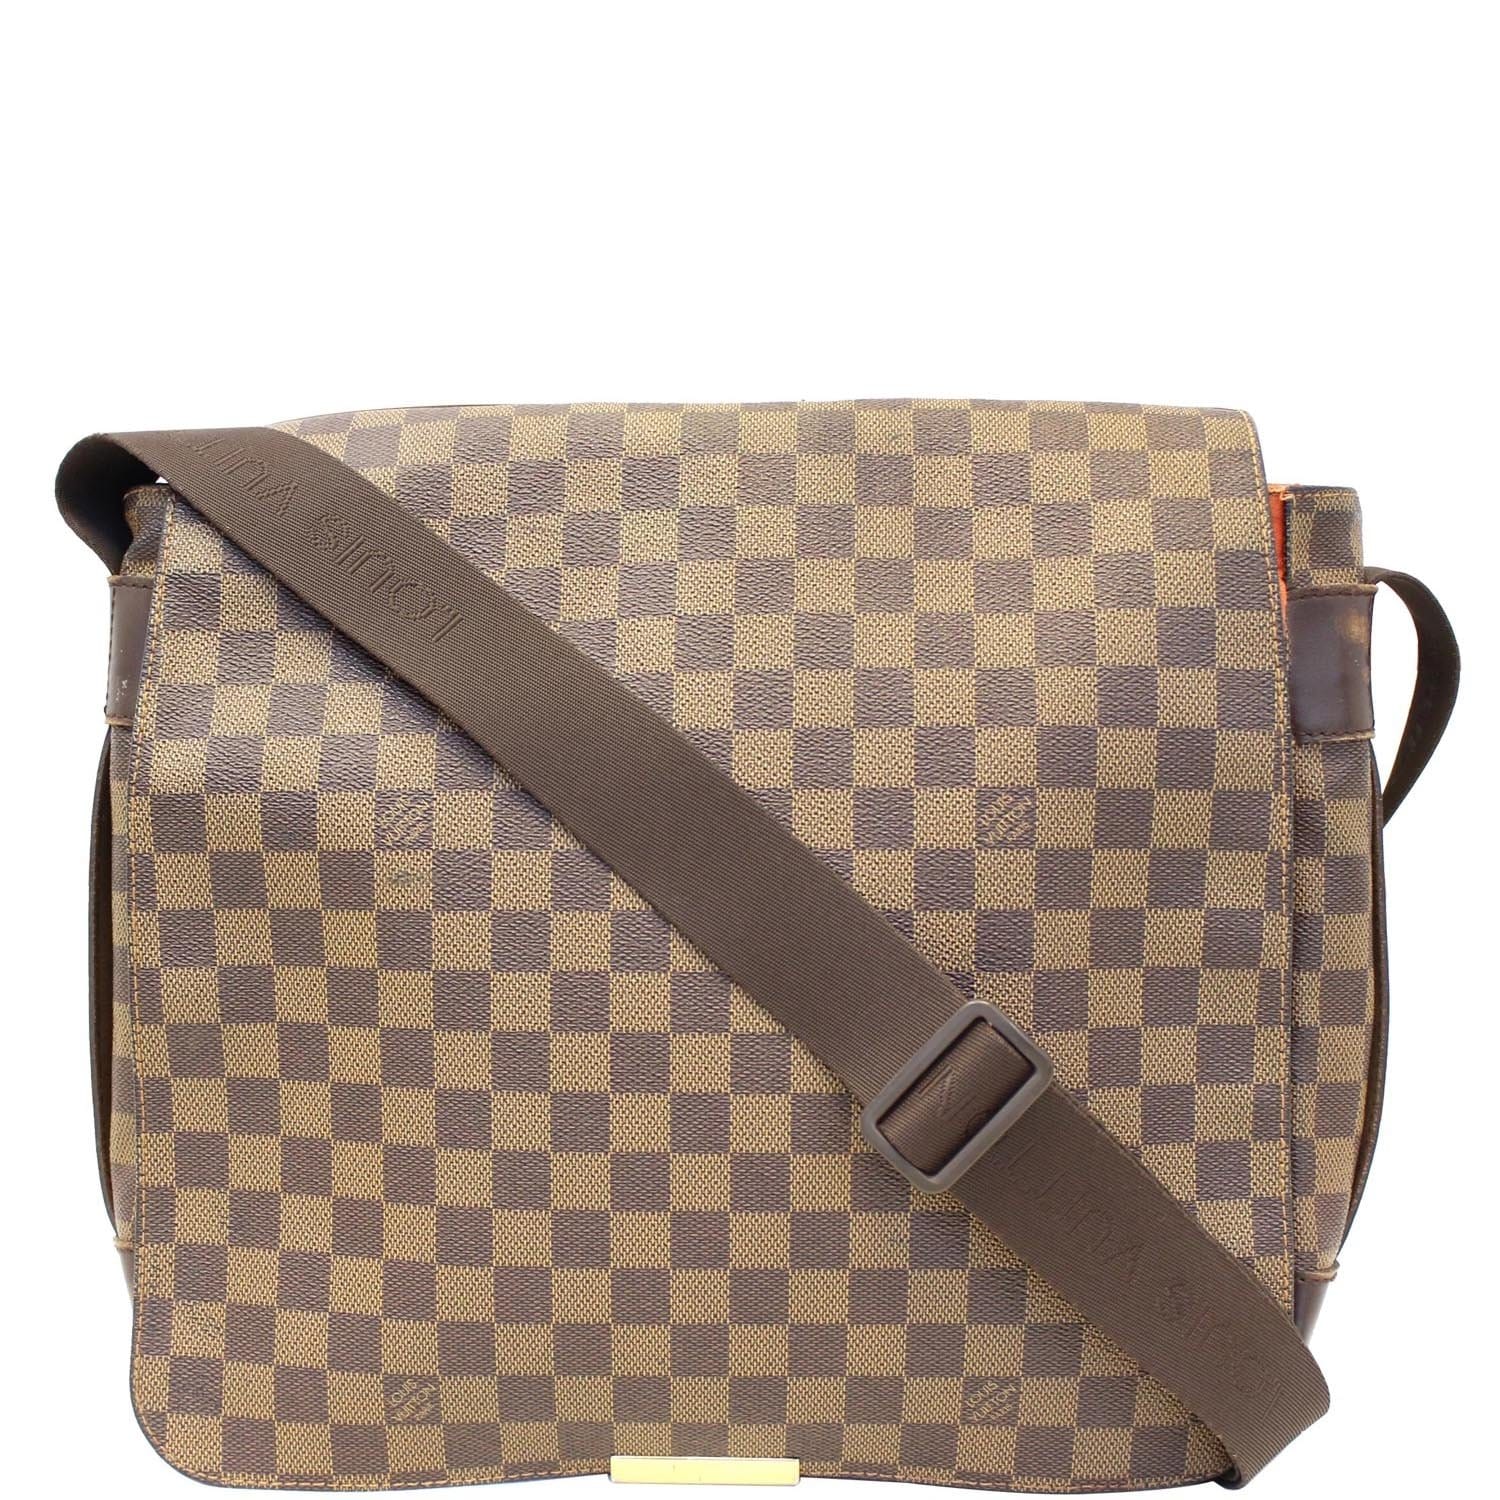 Authentic Louis Vuitton Damier Ebene Bastille Shoulder Bag N45258